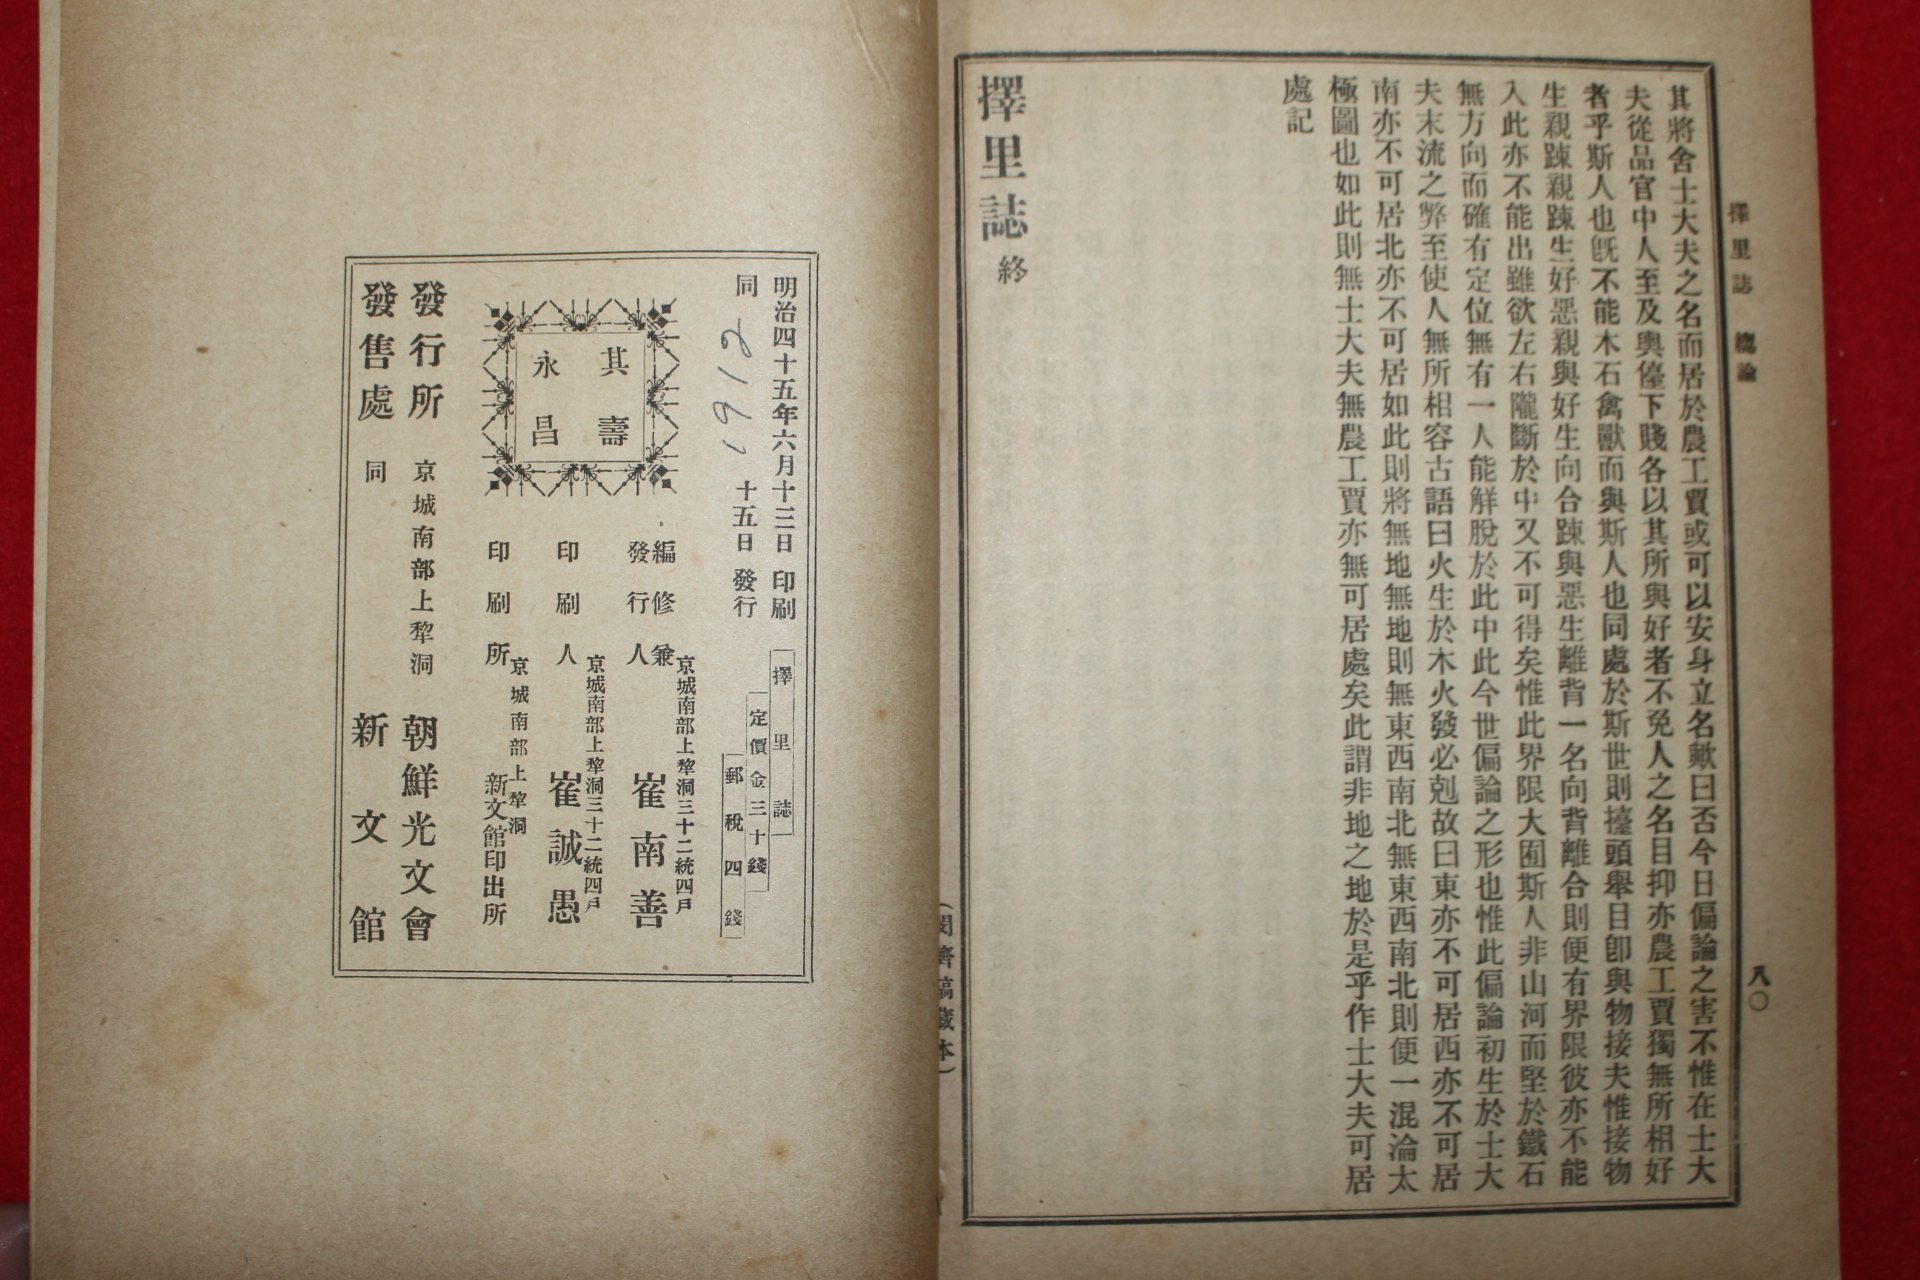 1912년 조선광문회 이중환(李重煥)저서 최남선발행 택리지(擇里誌) 1책완질